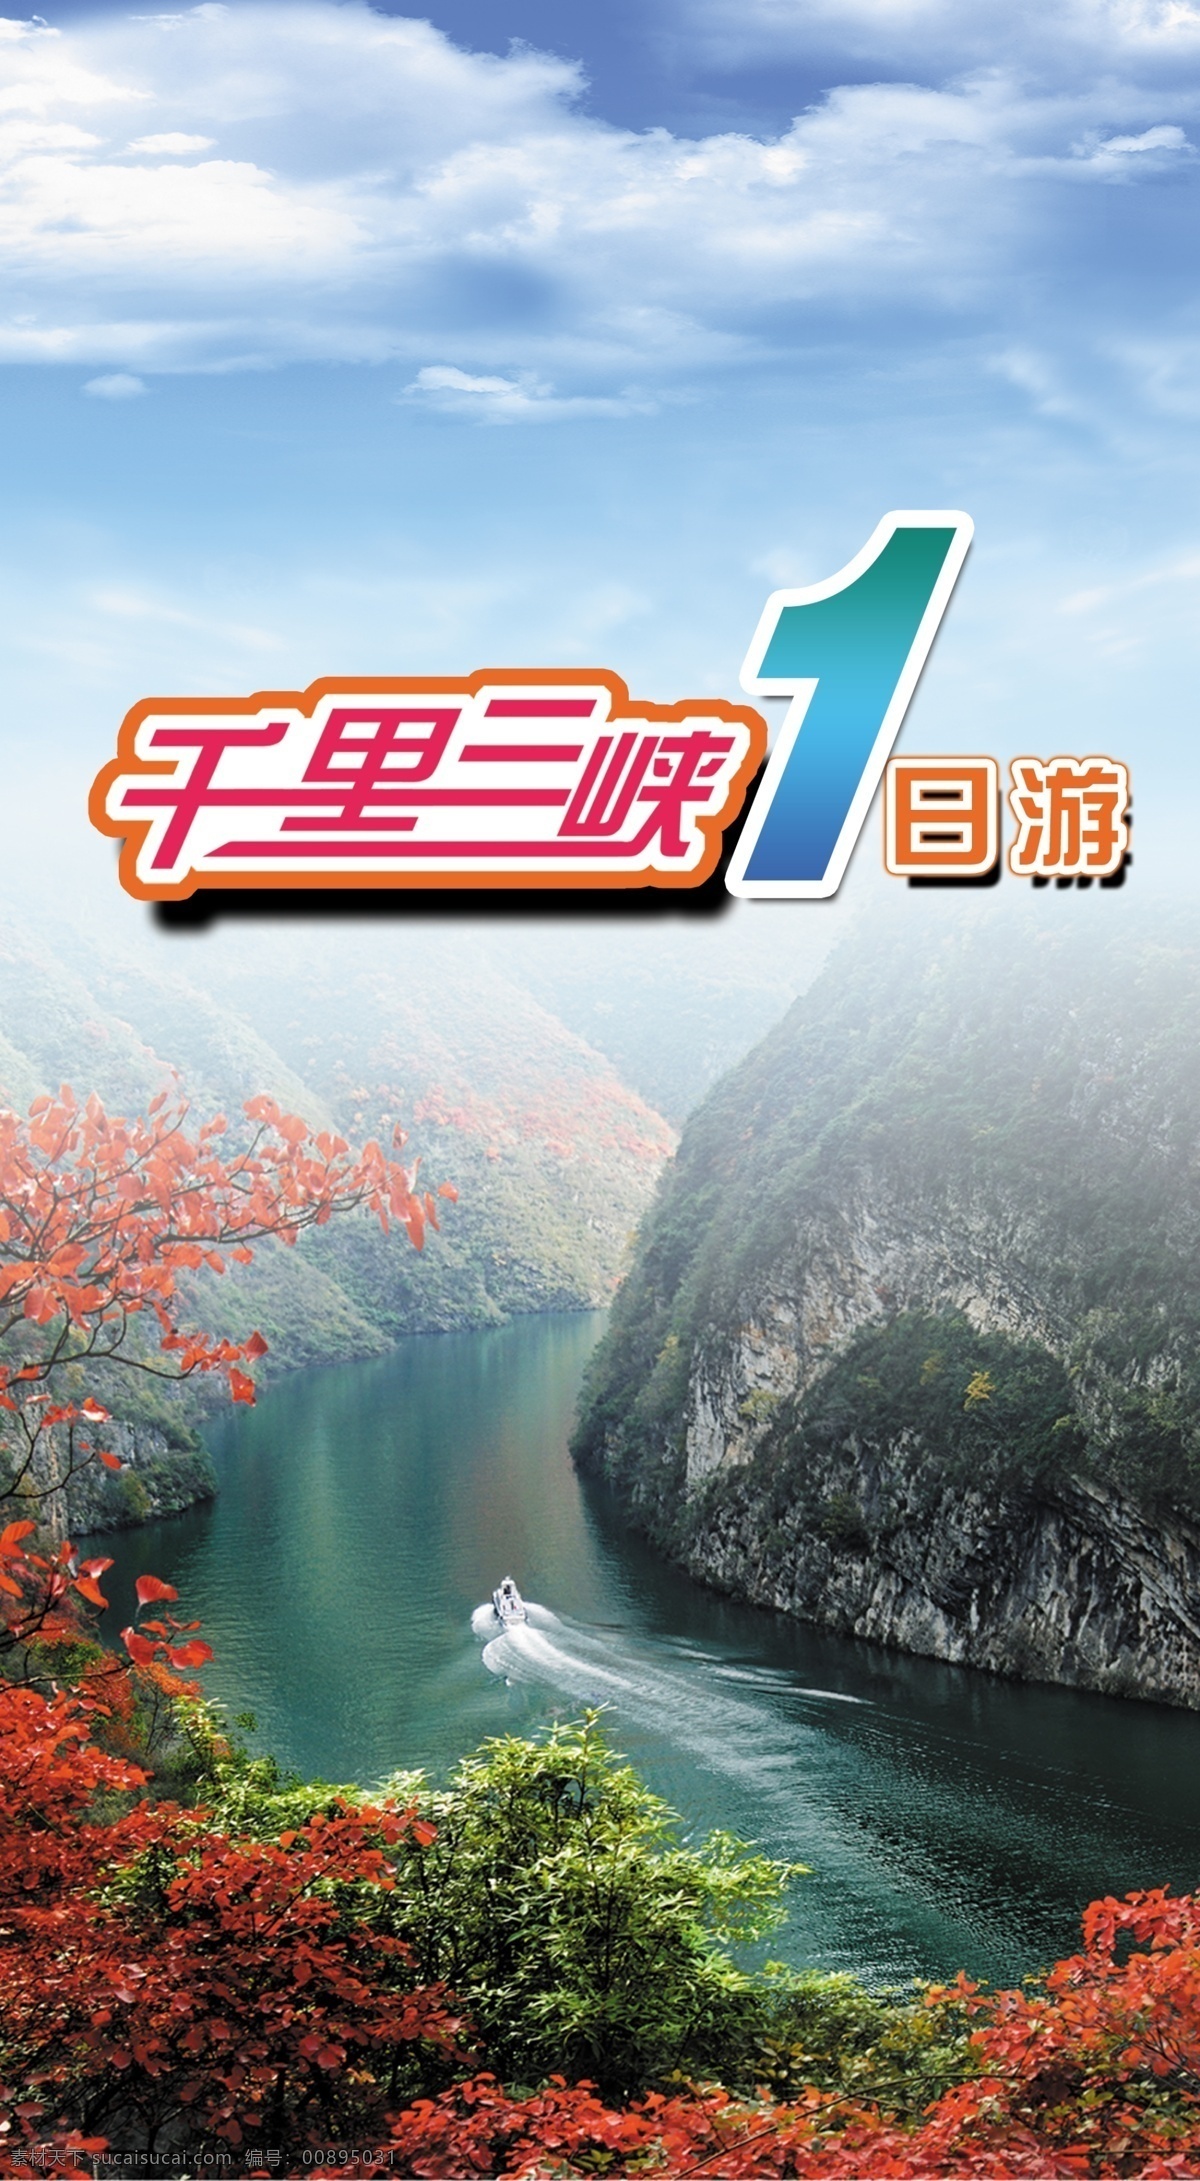 长江三峡图片 游轮 豪华游轮 三峡游轮 游三峡 三峡美景 观赏 长江 三峡 长江三峡 分层